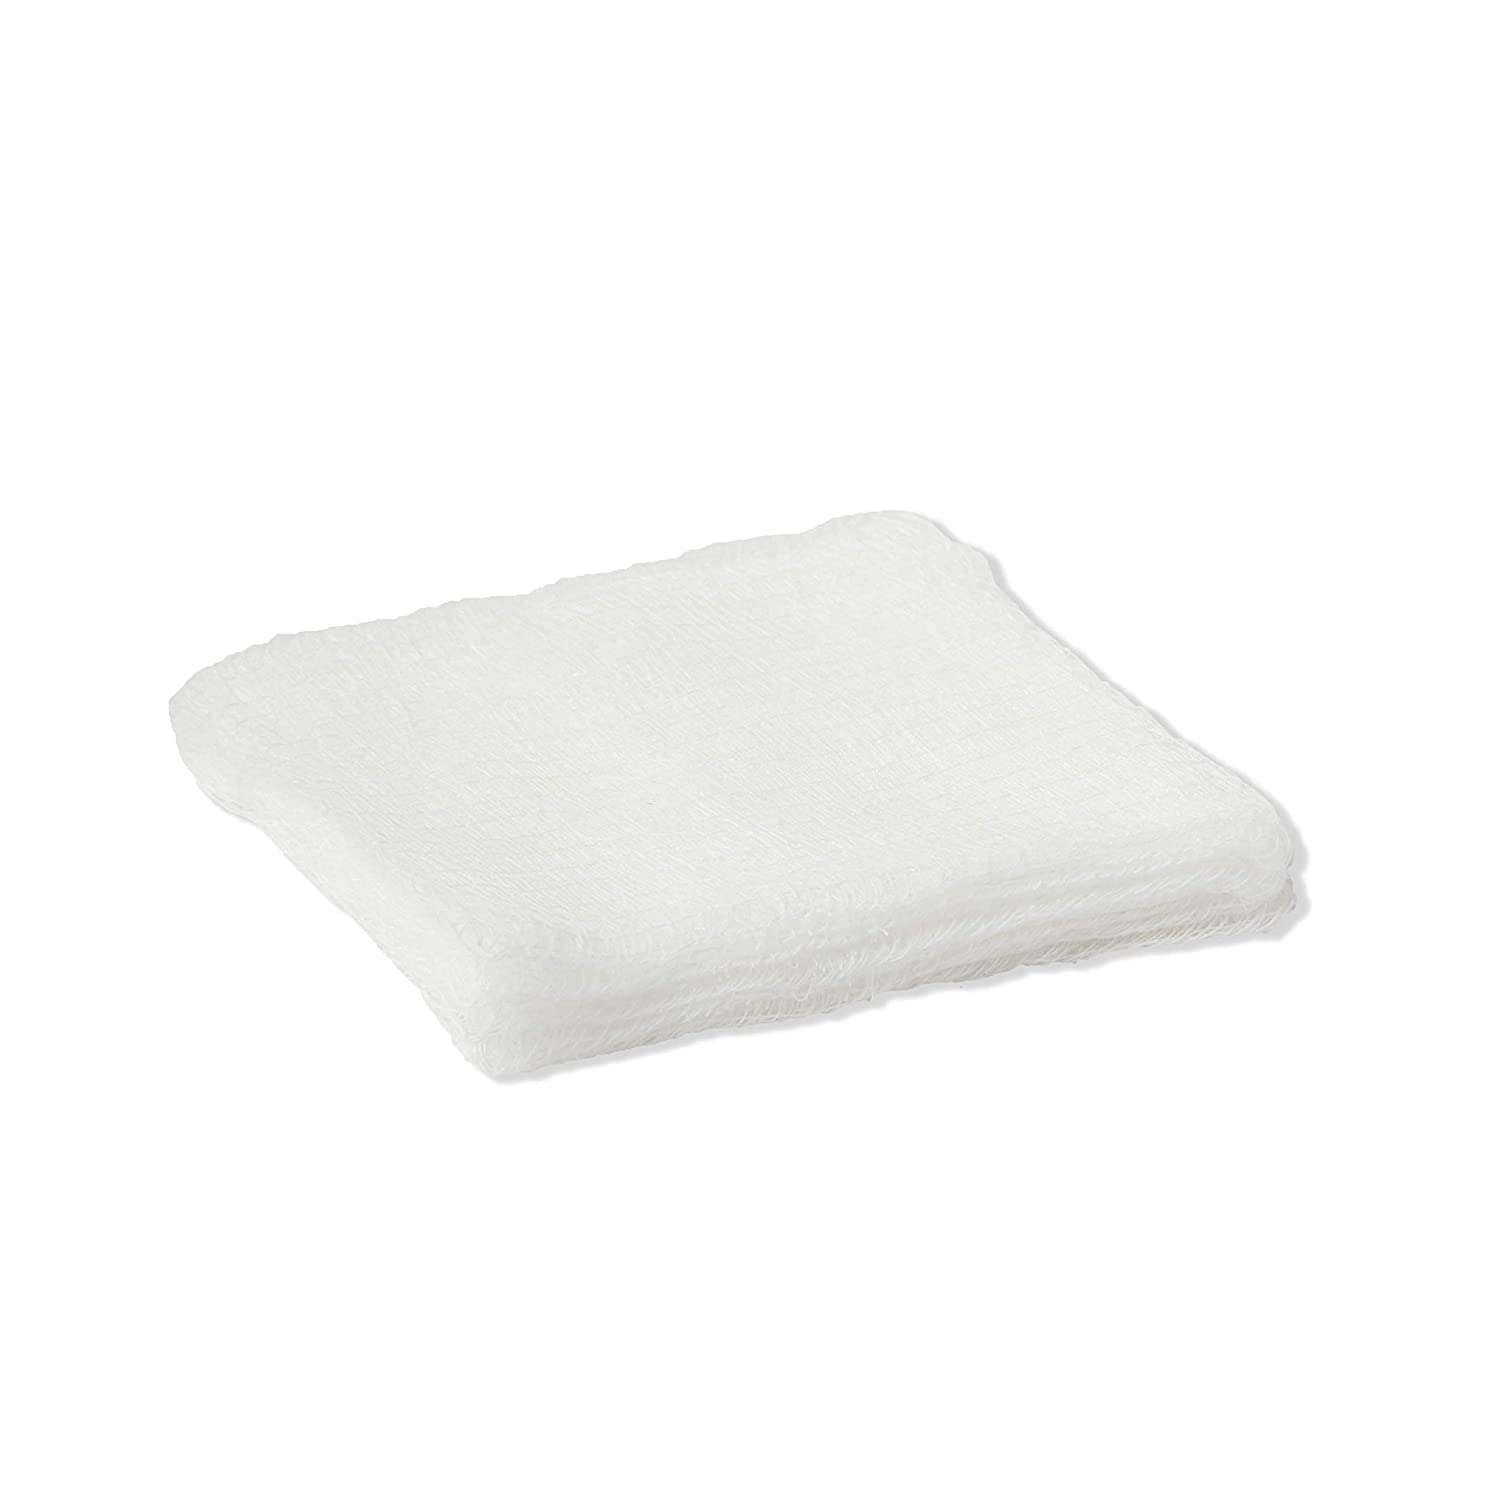 Almohadilla de gasa de algodón estéril absorbente desechable médico